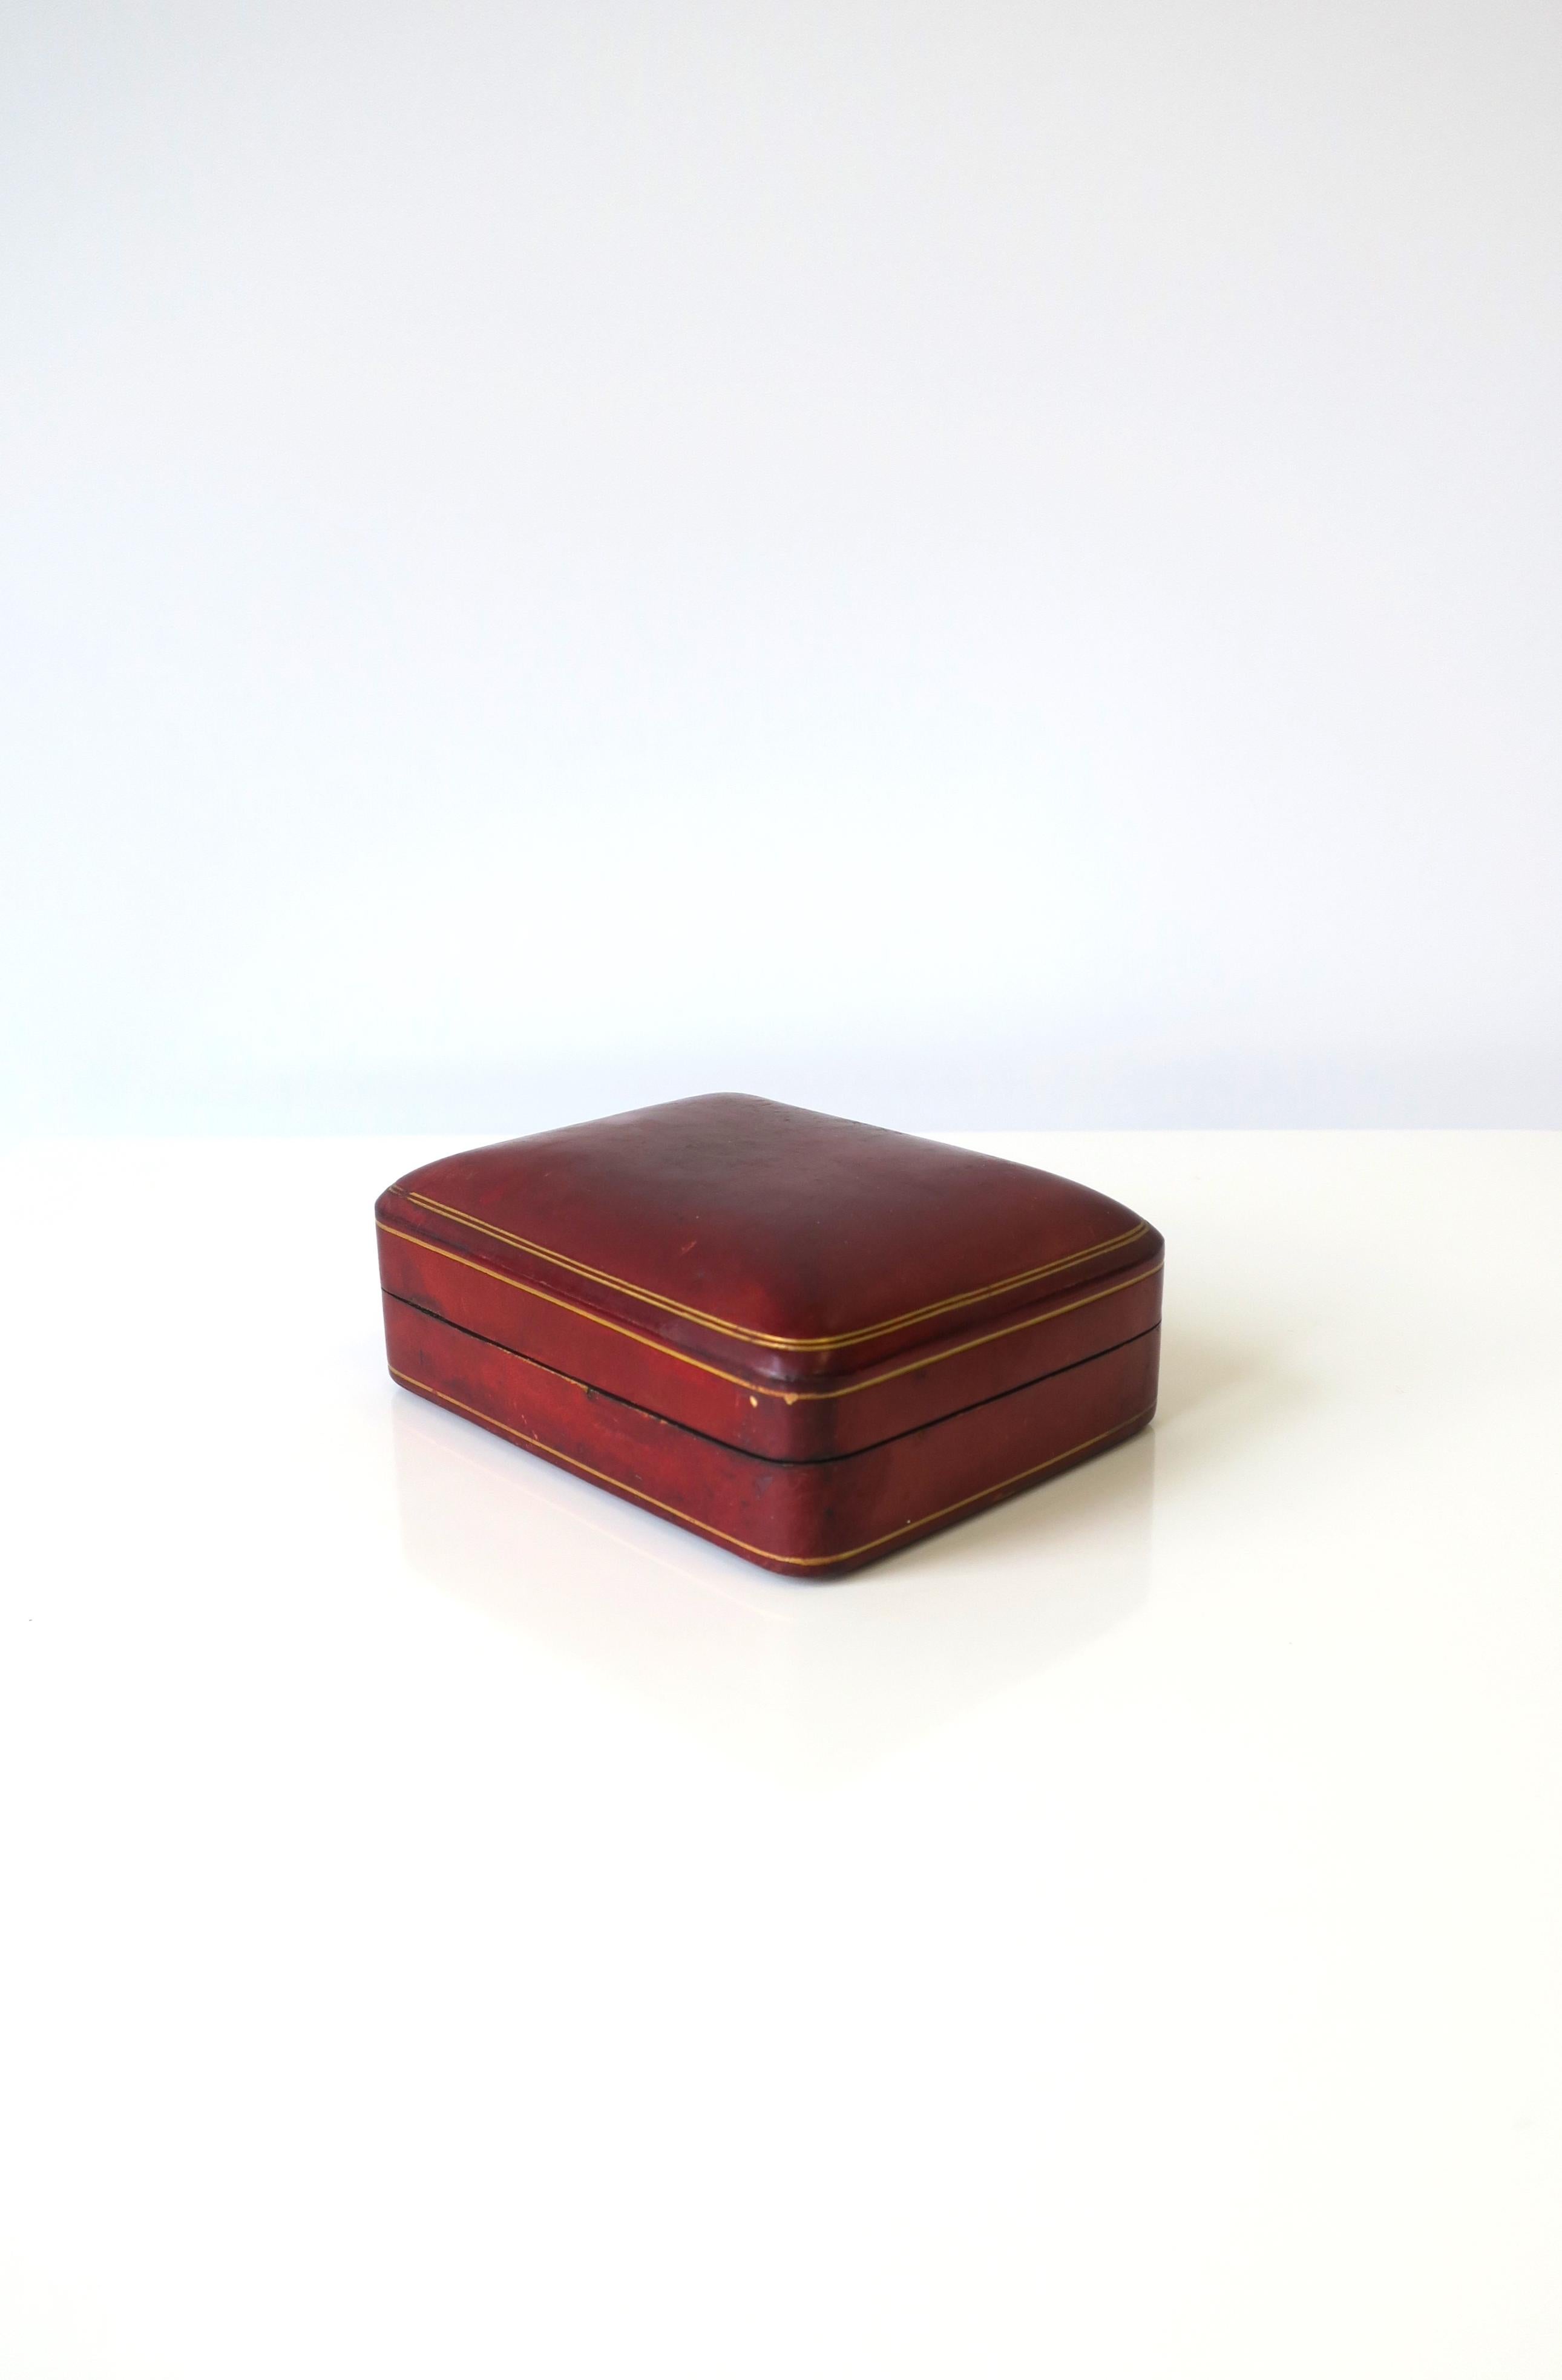 Magnifique boîte à bijoux italienne vintage en cuir rouge bordeaux avec gaufrage doré, vers le milieu du 20e siècle, Italie. Marqué 